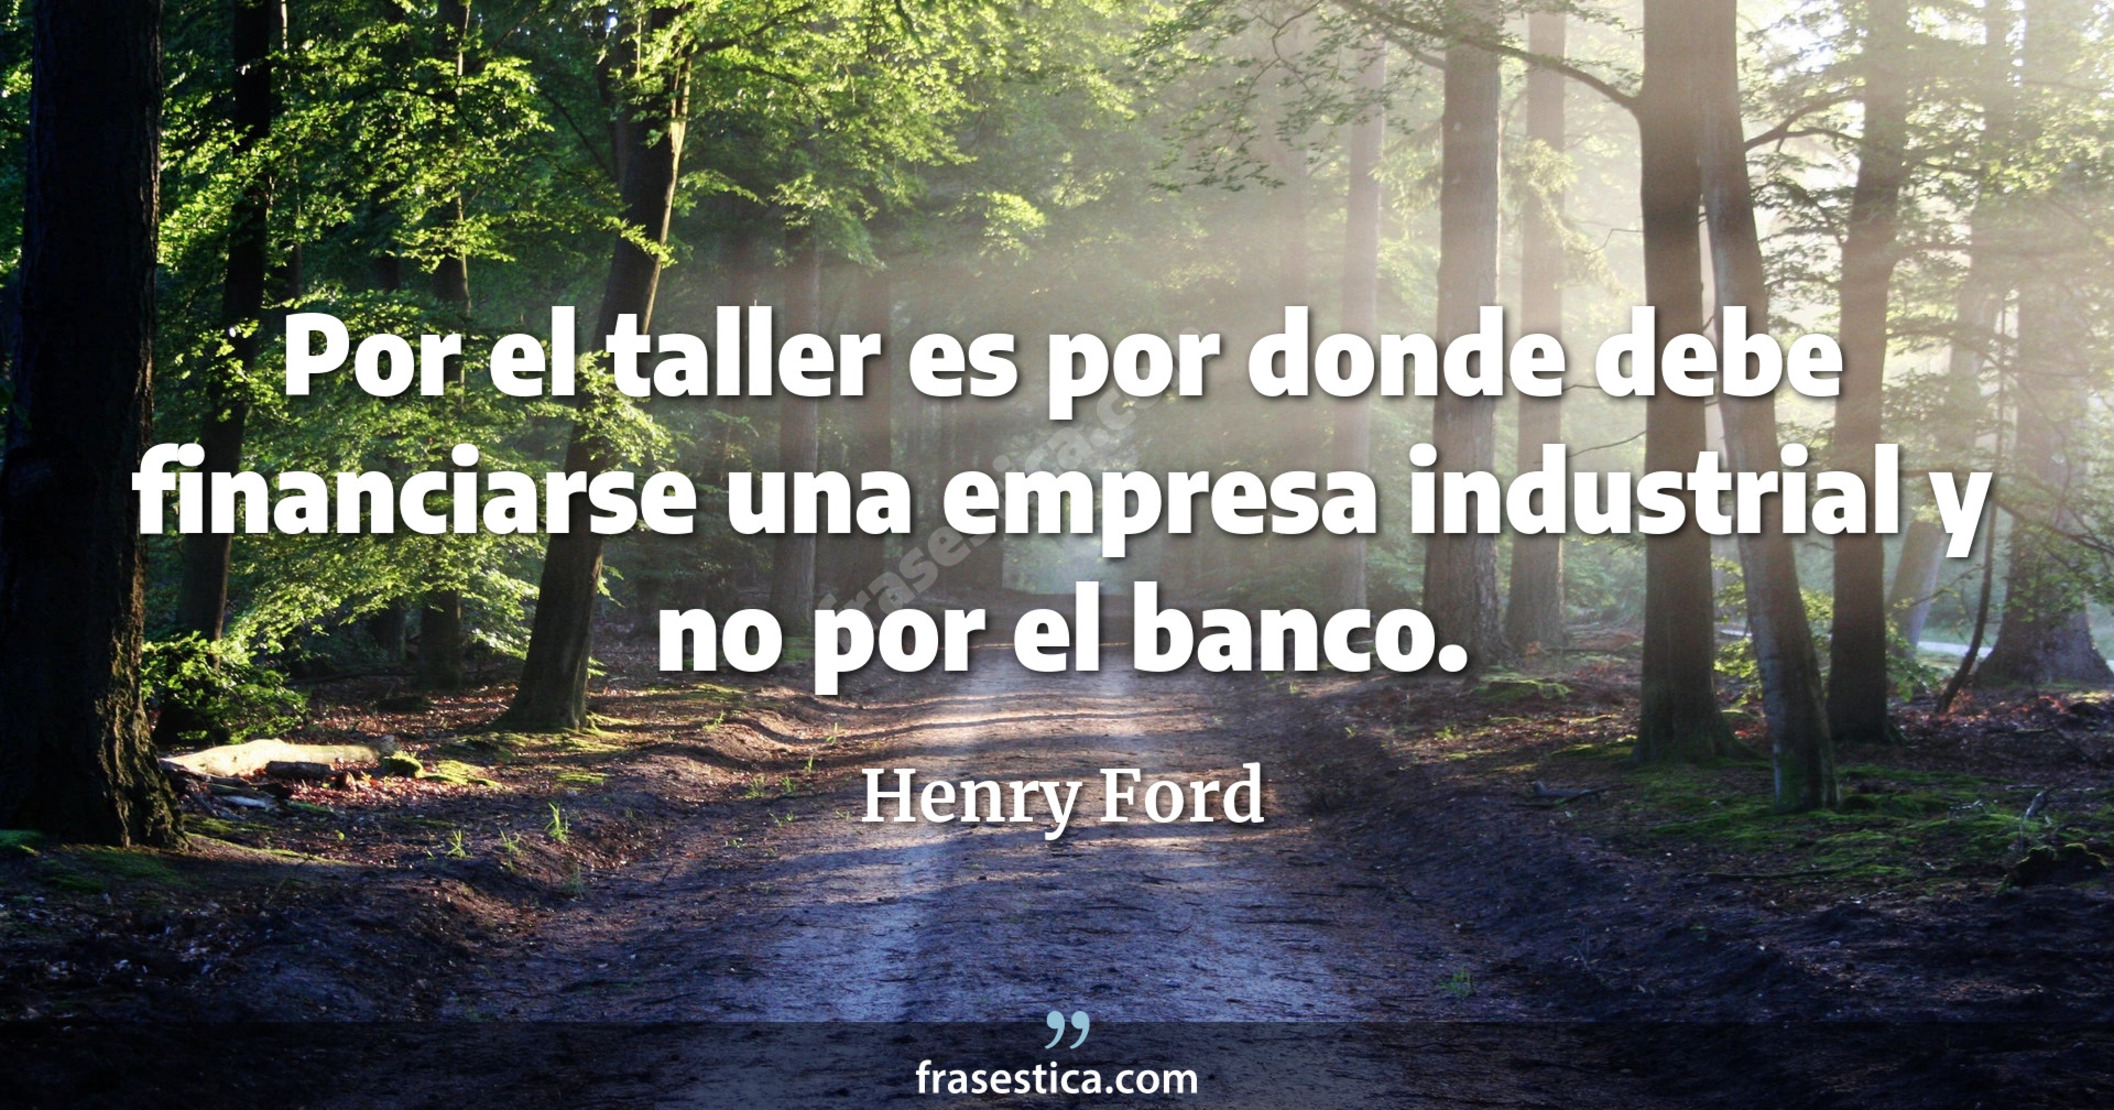 Por el taller es por donde debe financiarse una empresa industrial y no por el banco. - Henry Ford